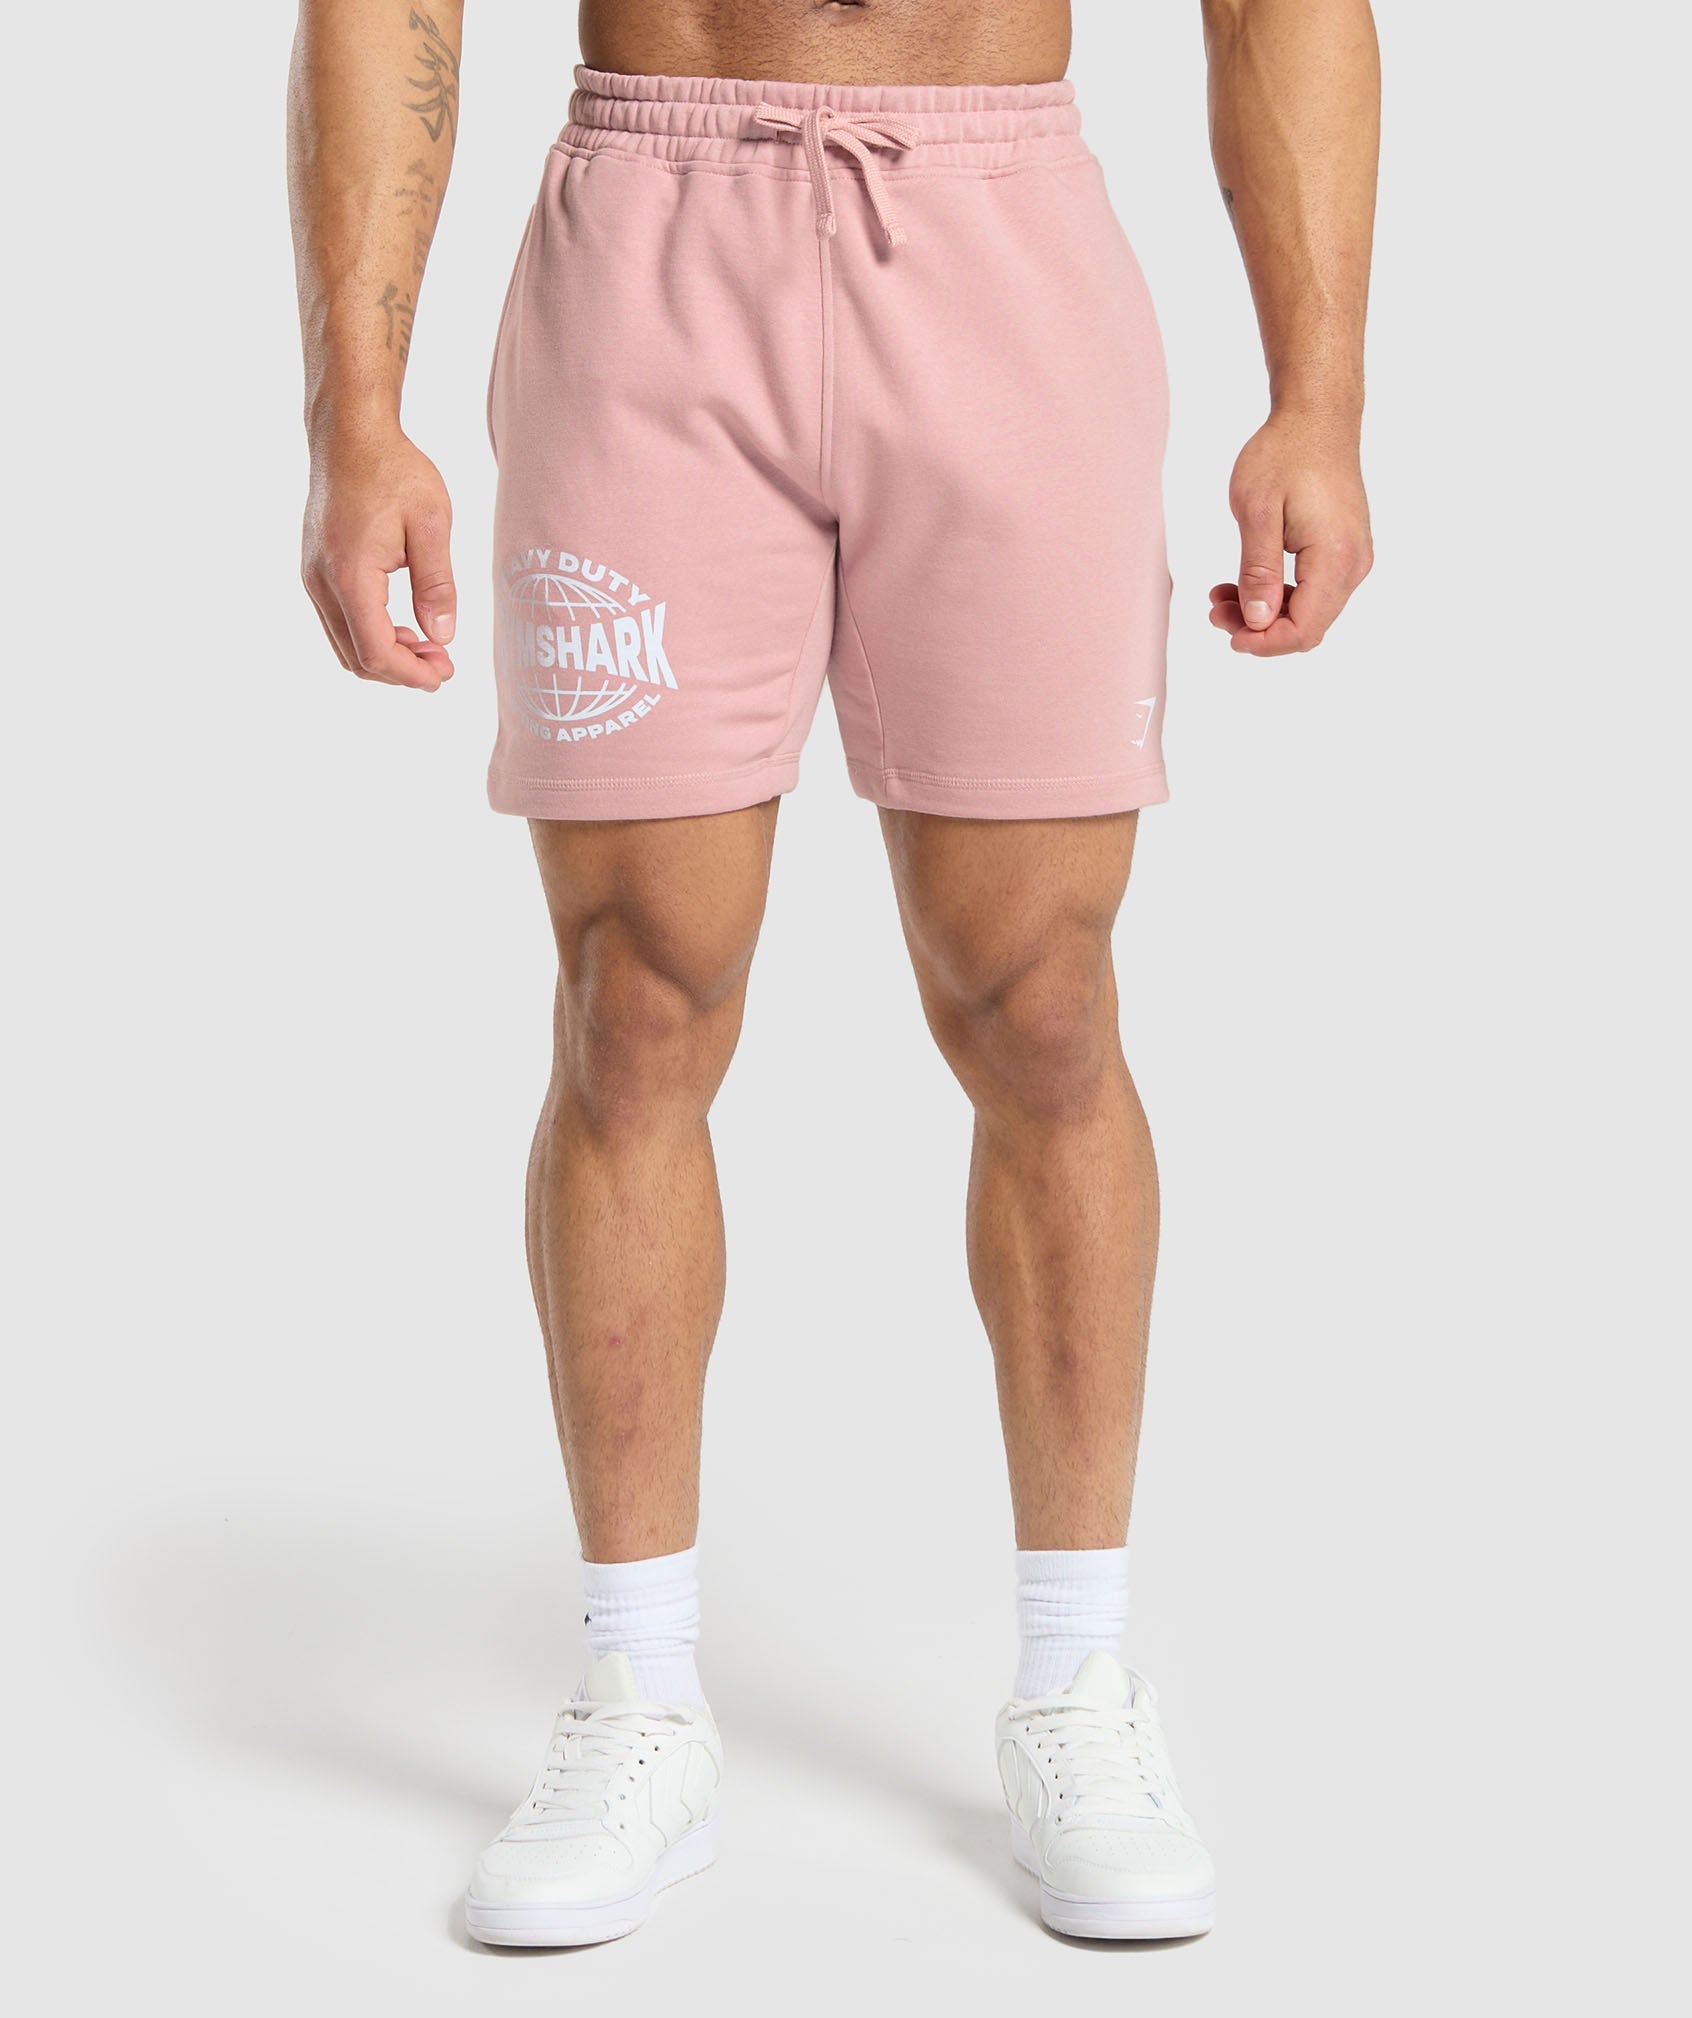 Heavy Duty Apparel 7" Shorts en Light Pink